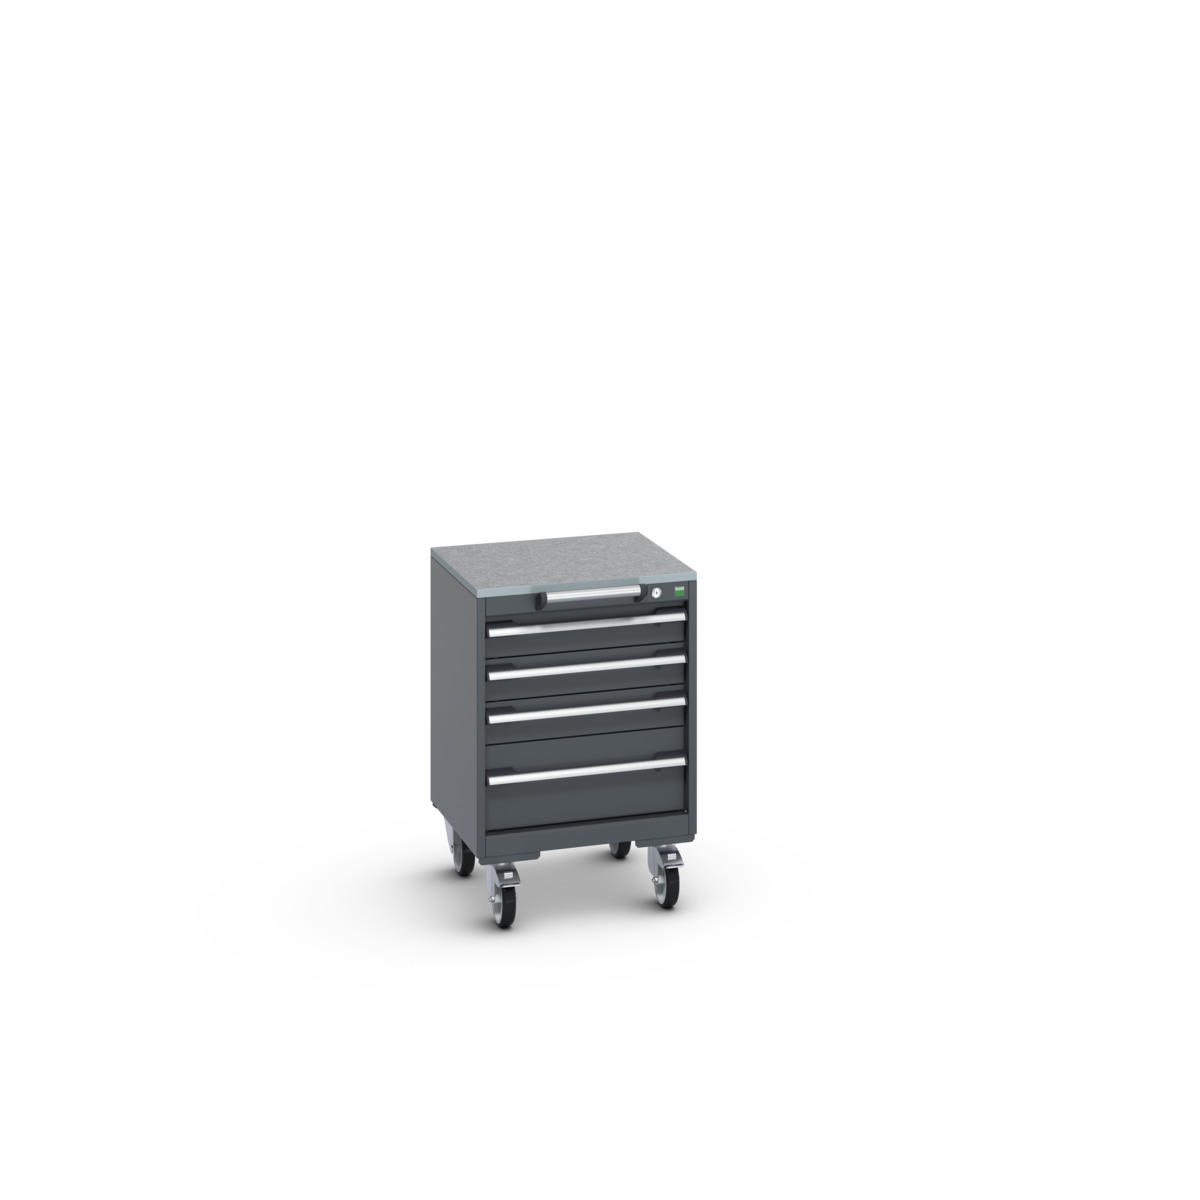 40402134.77V - cubio mobile cabinet